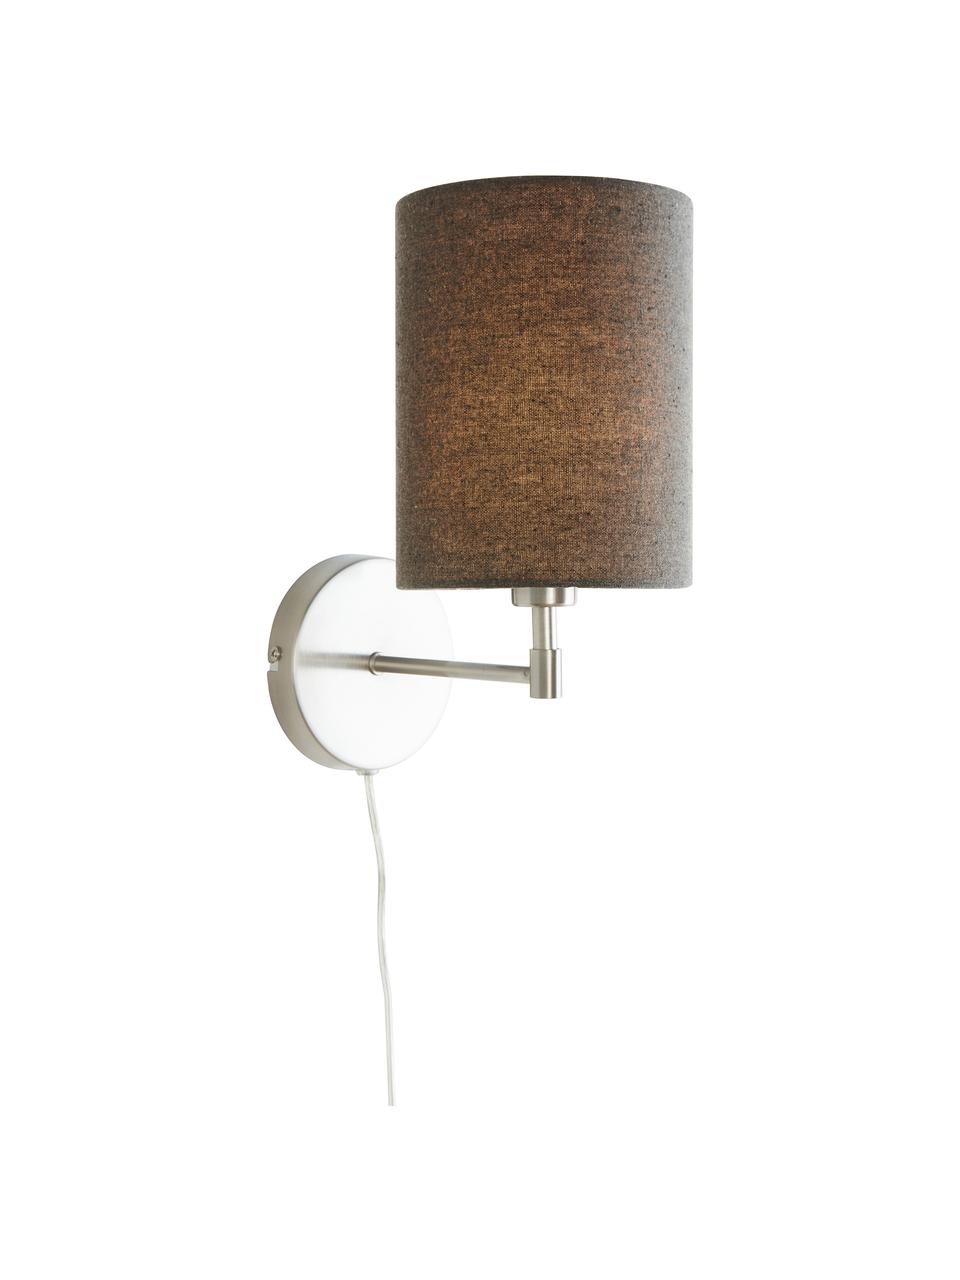 Klassieke wandlampen Seth met stekker, 2 stuks, Lampenkap: textiel, Grijs, nikkelkleurig, D 23 x H 32 cm